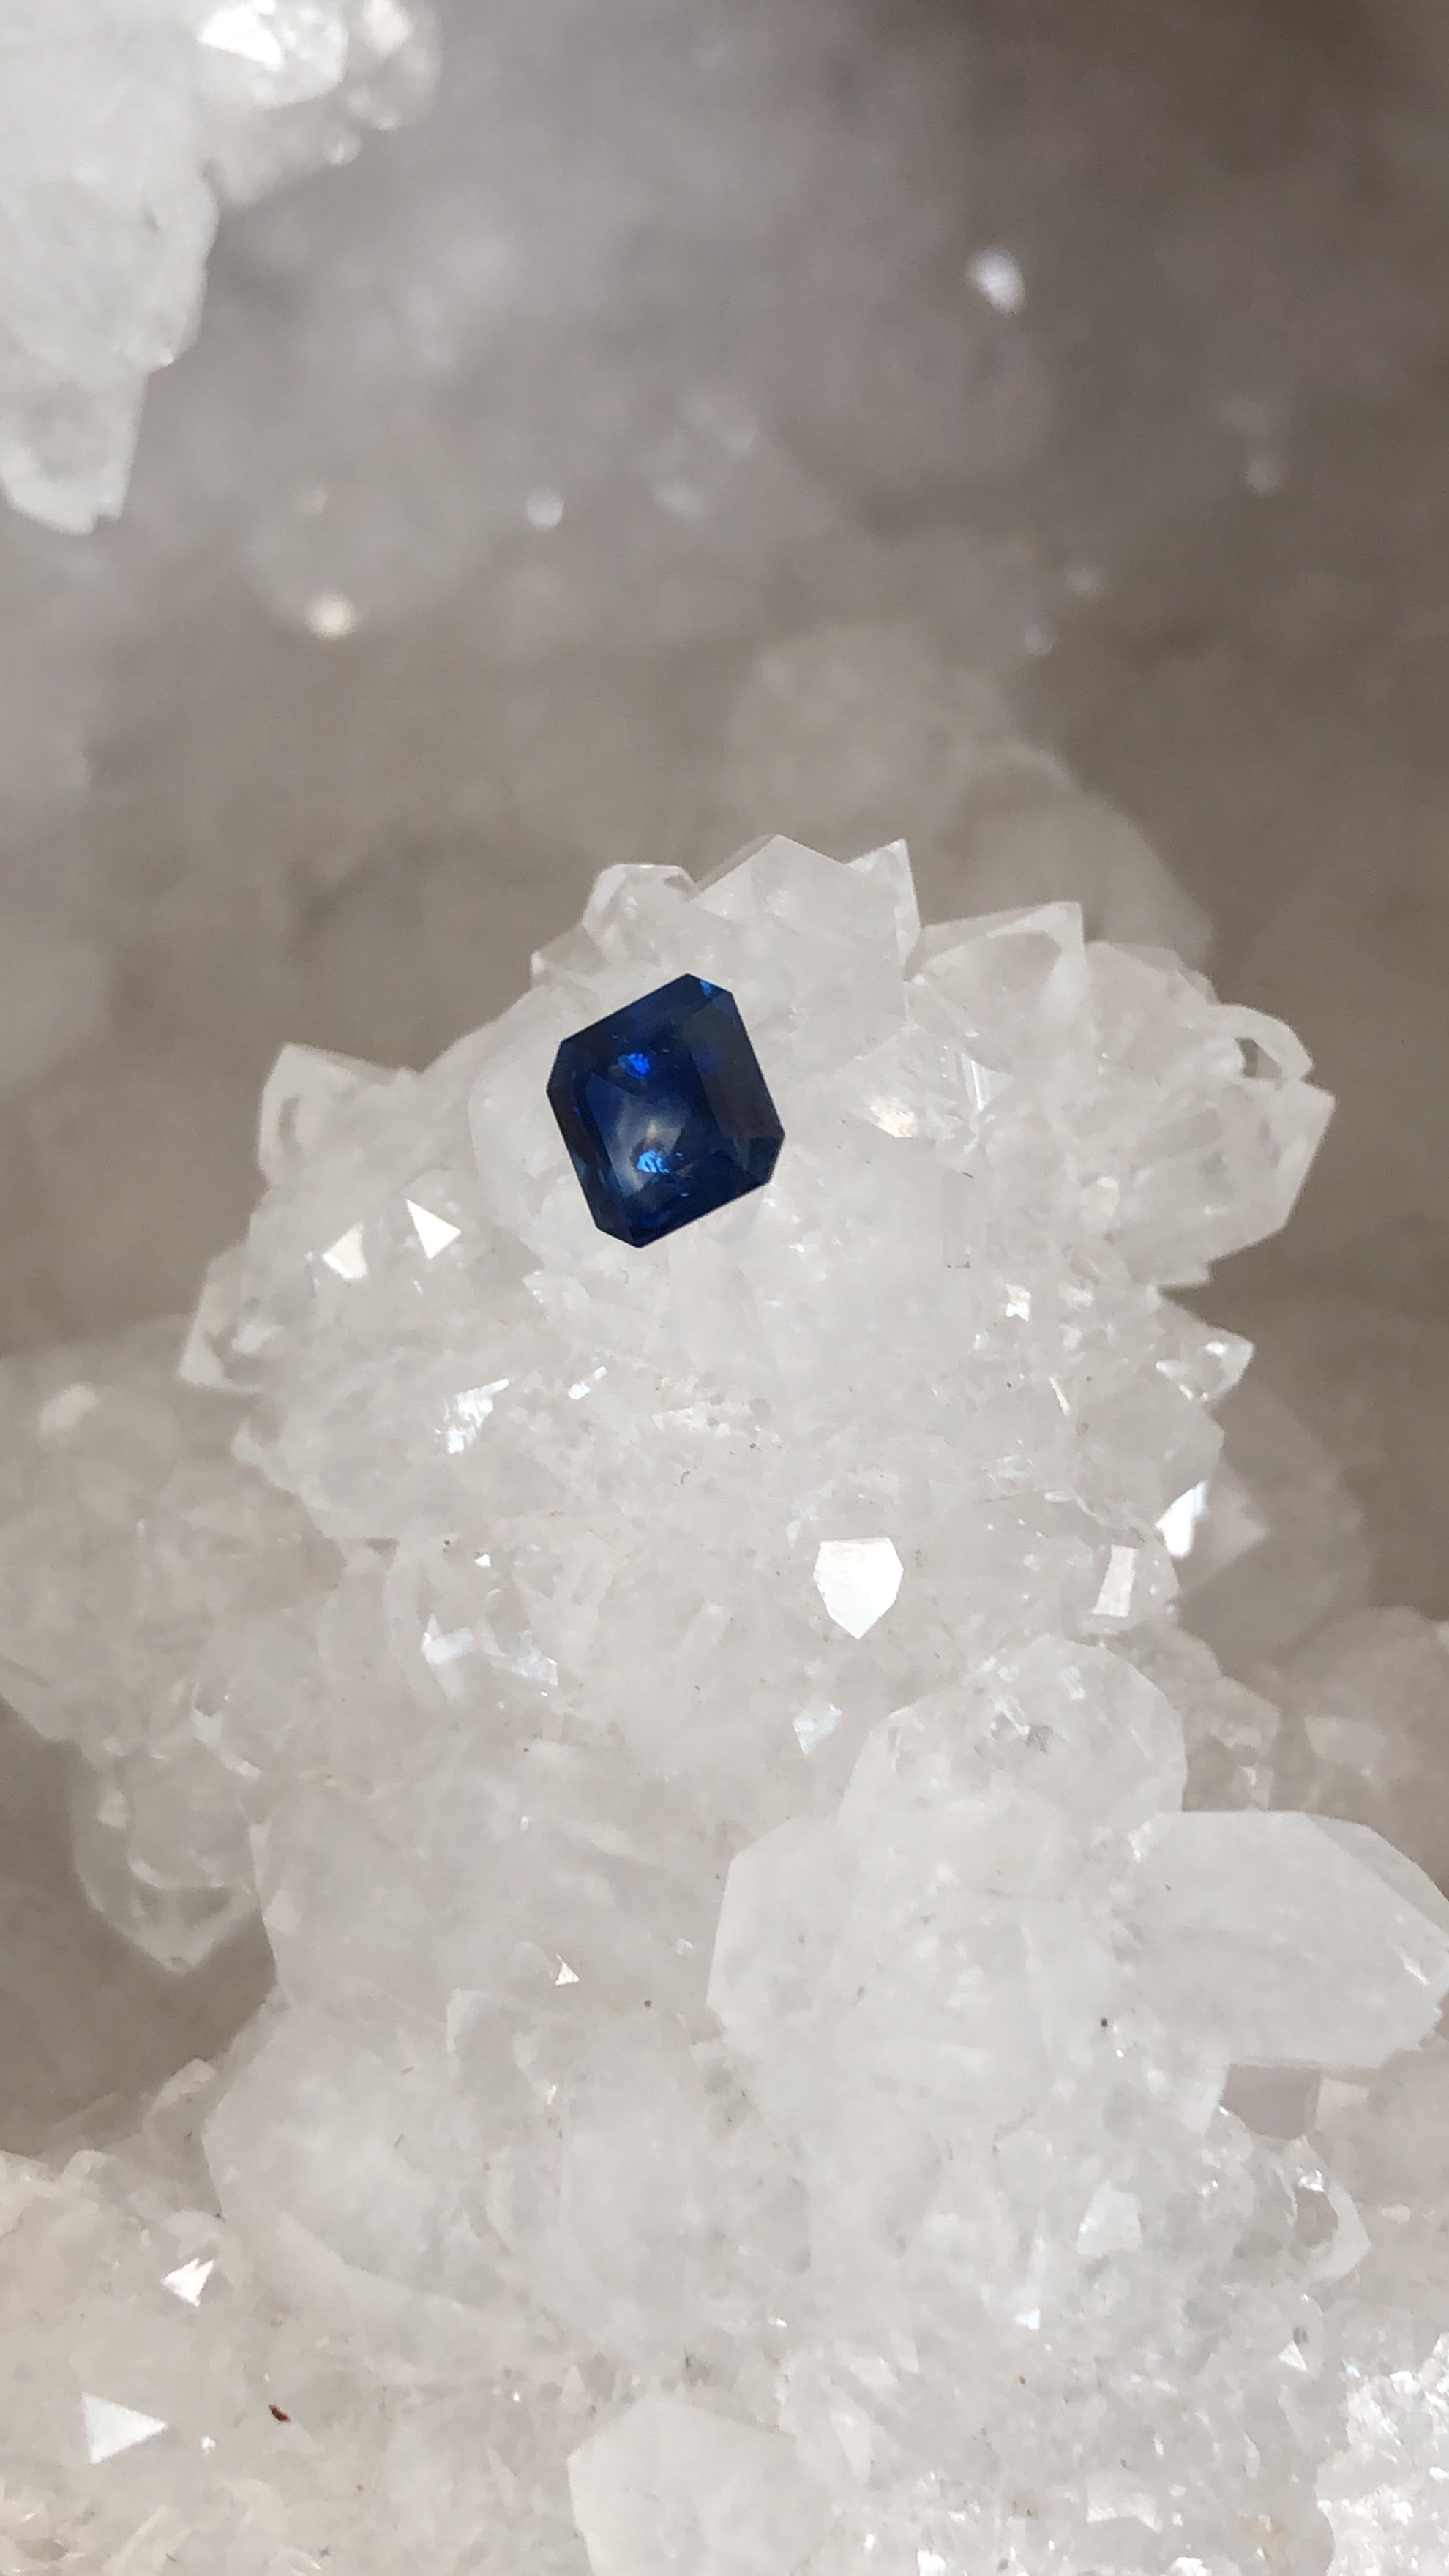 Montana Sapphire 1.08 CT Deep Blue, Silver, Hint of Gold Asscher Cut